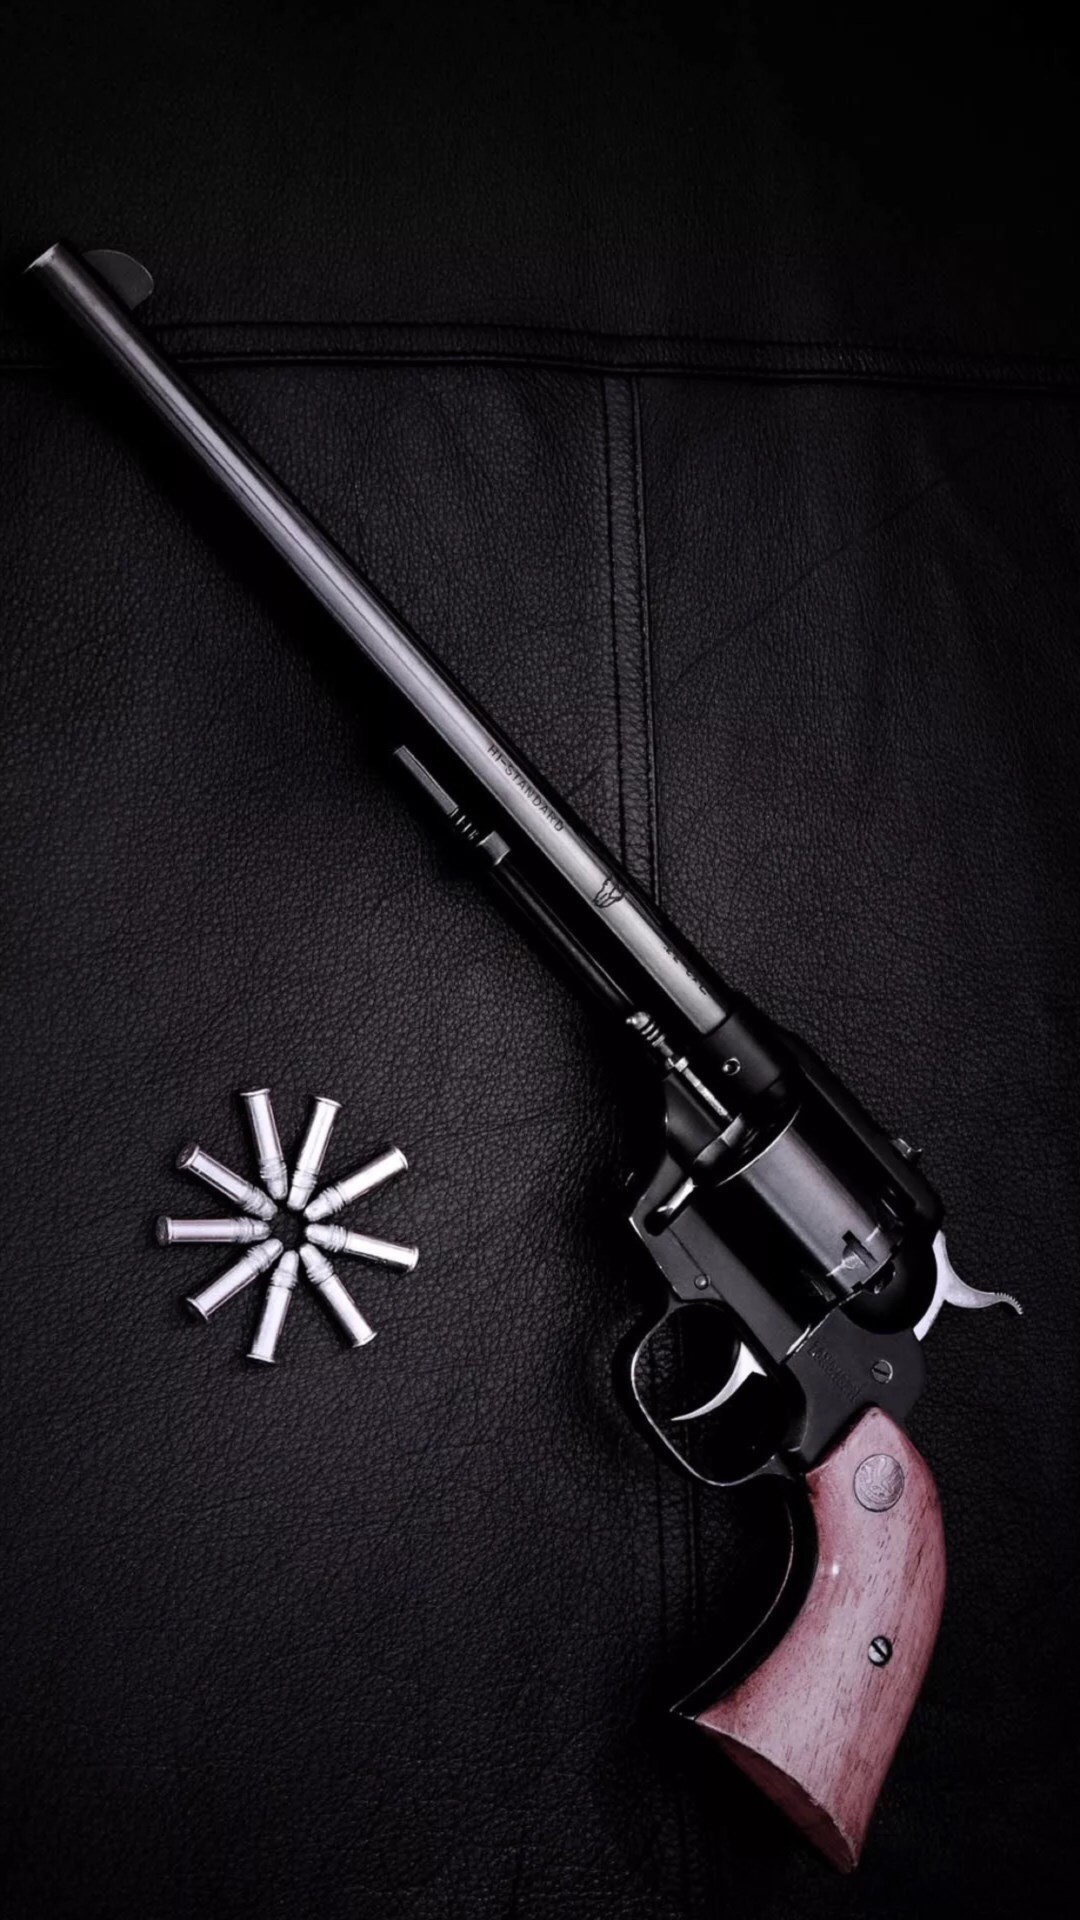 Revolver Gun Dark Background #iPhone #wallpaper